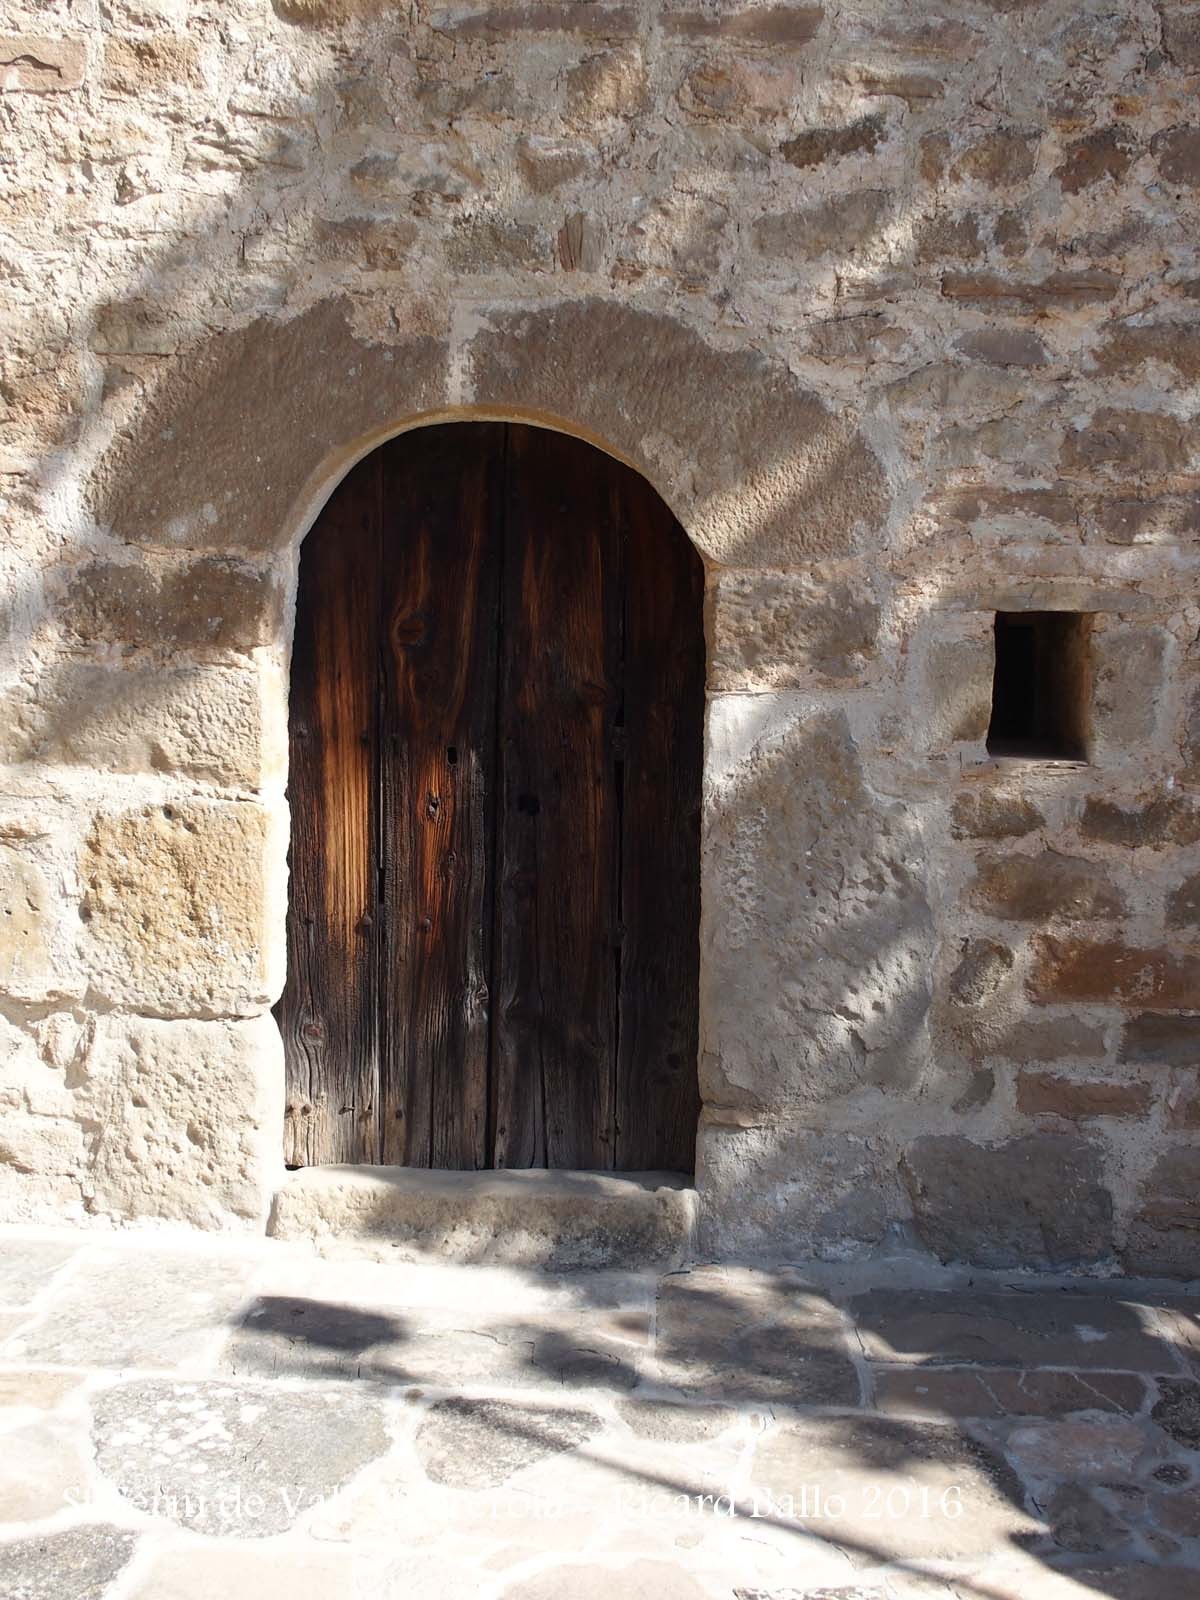 Església de Sant Serni de Vall-llebrerola – Artesa de Segre